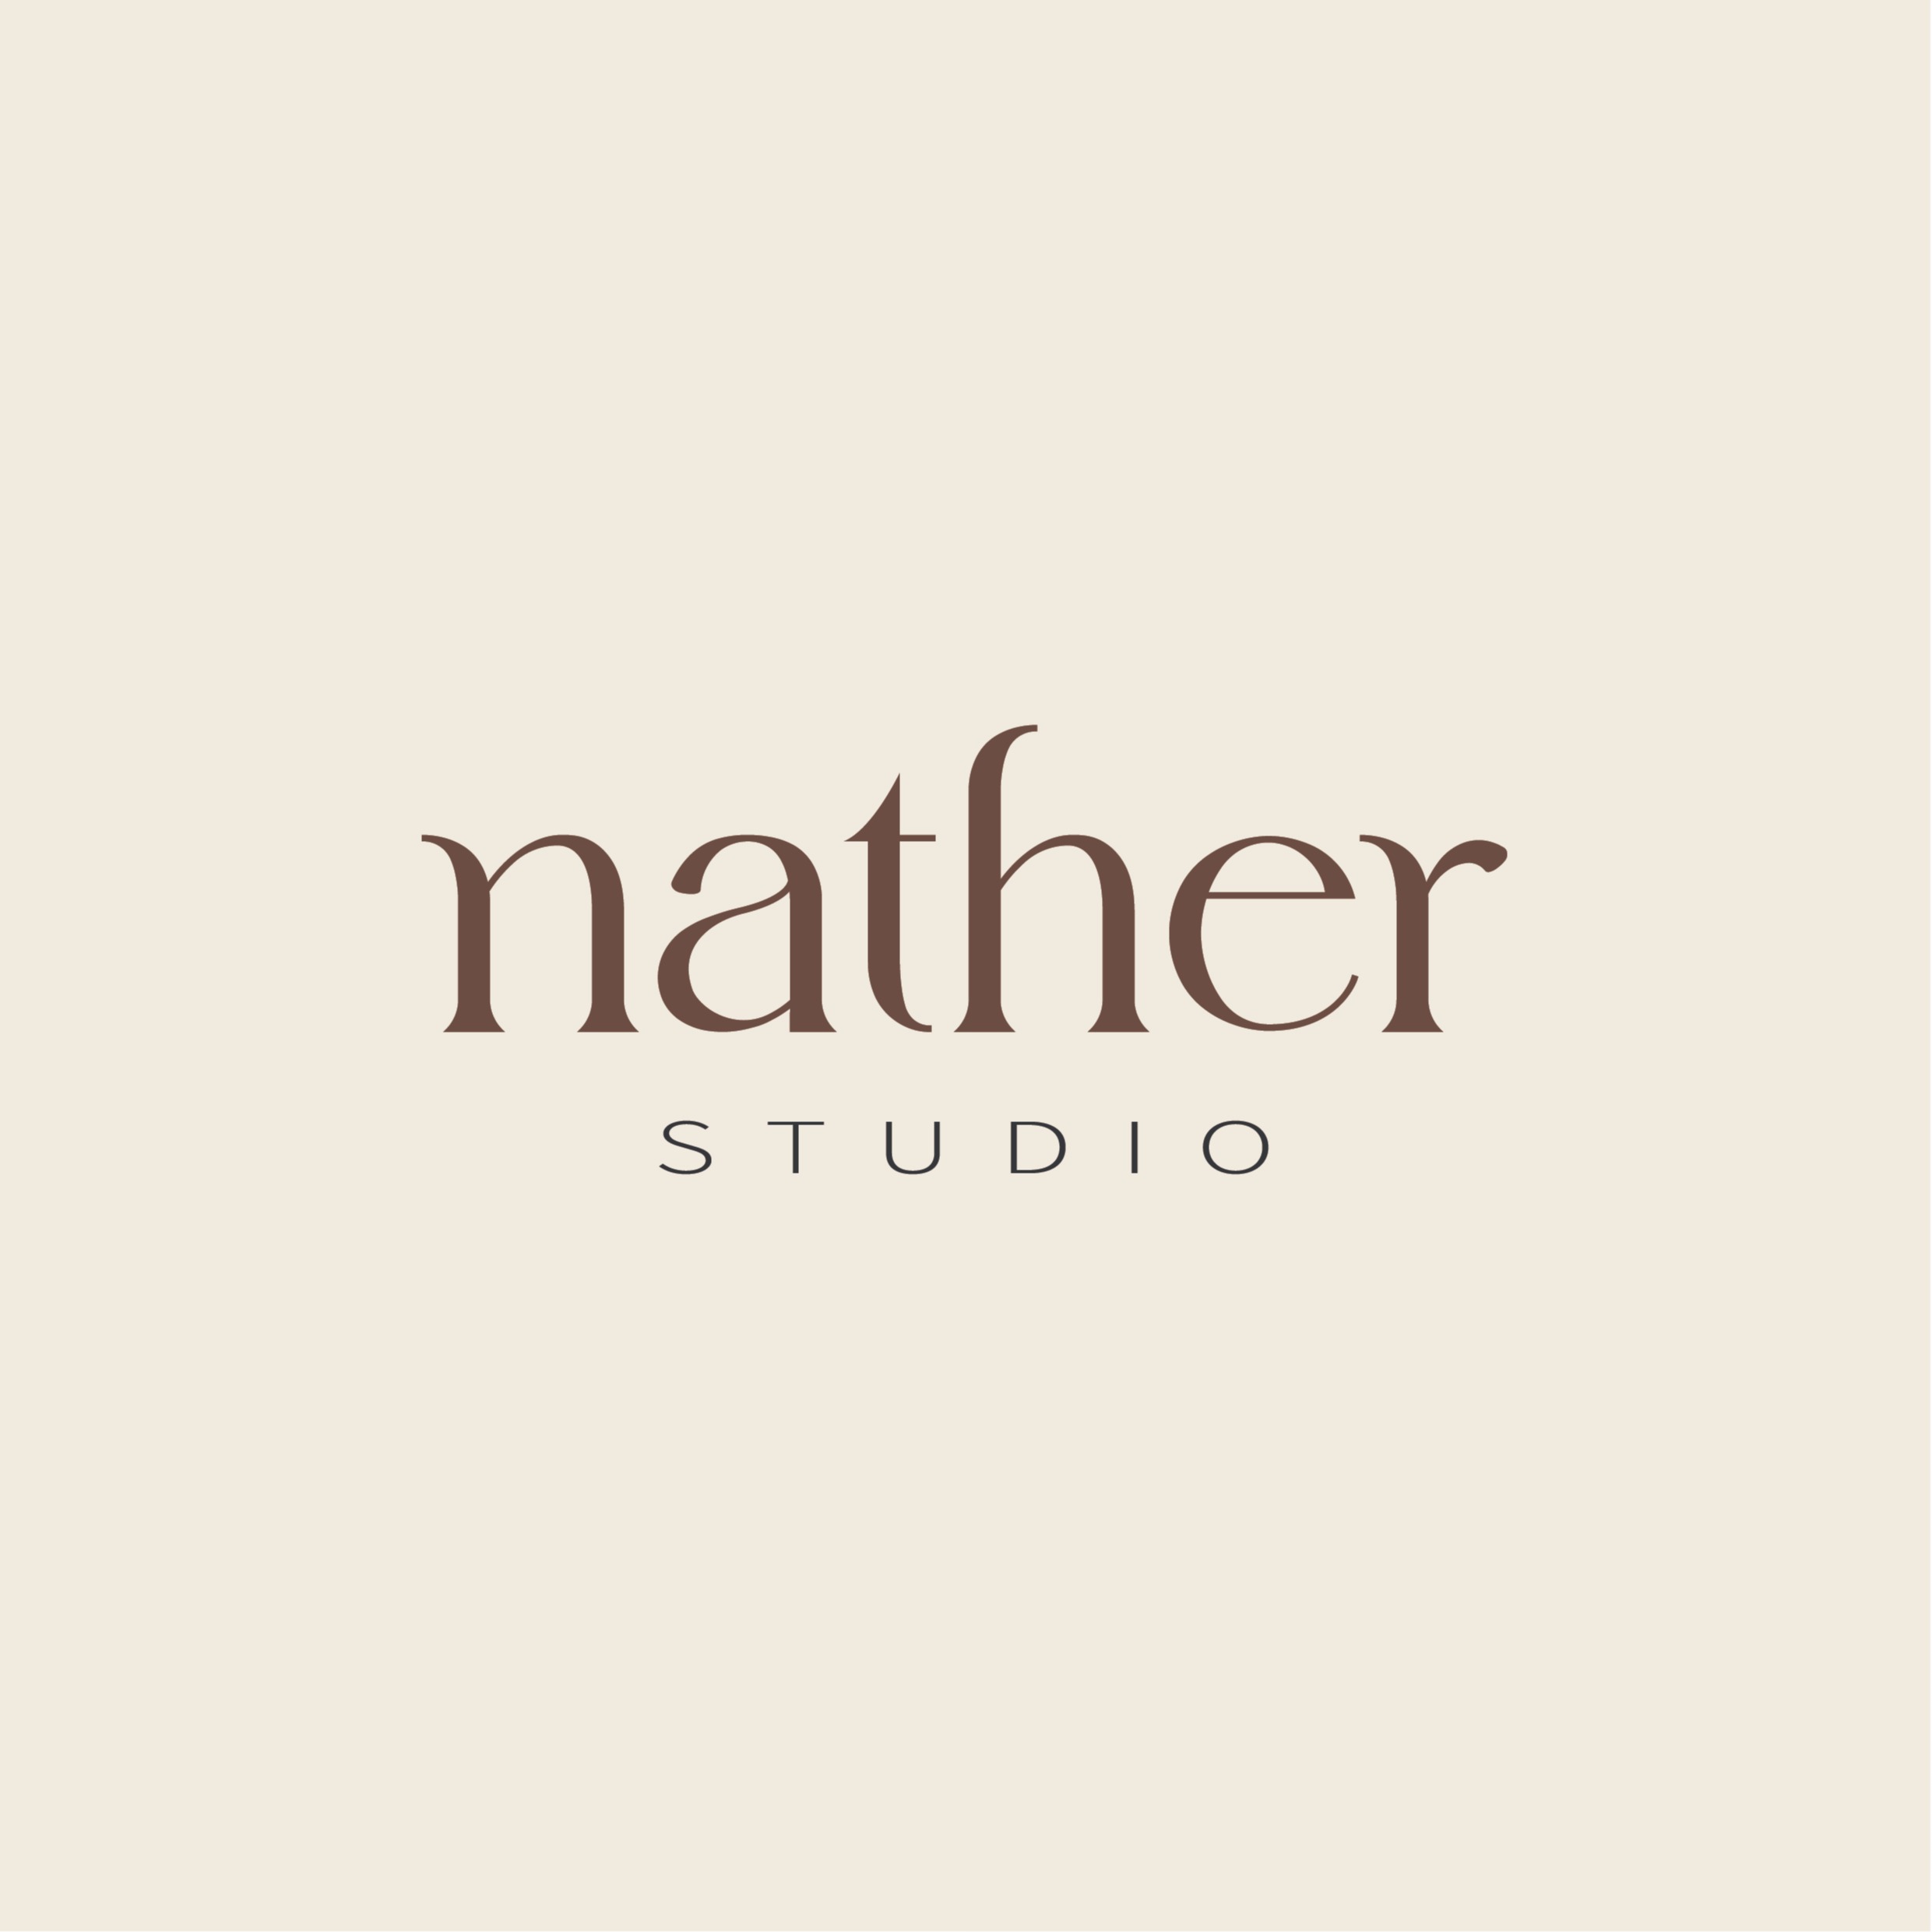 Nather studio